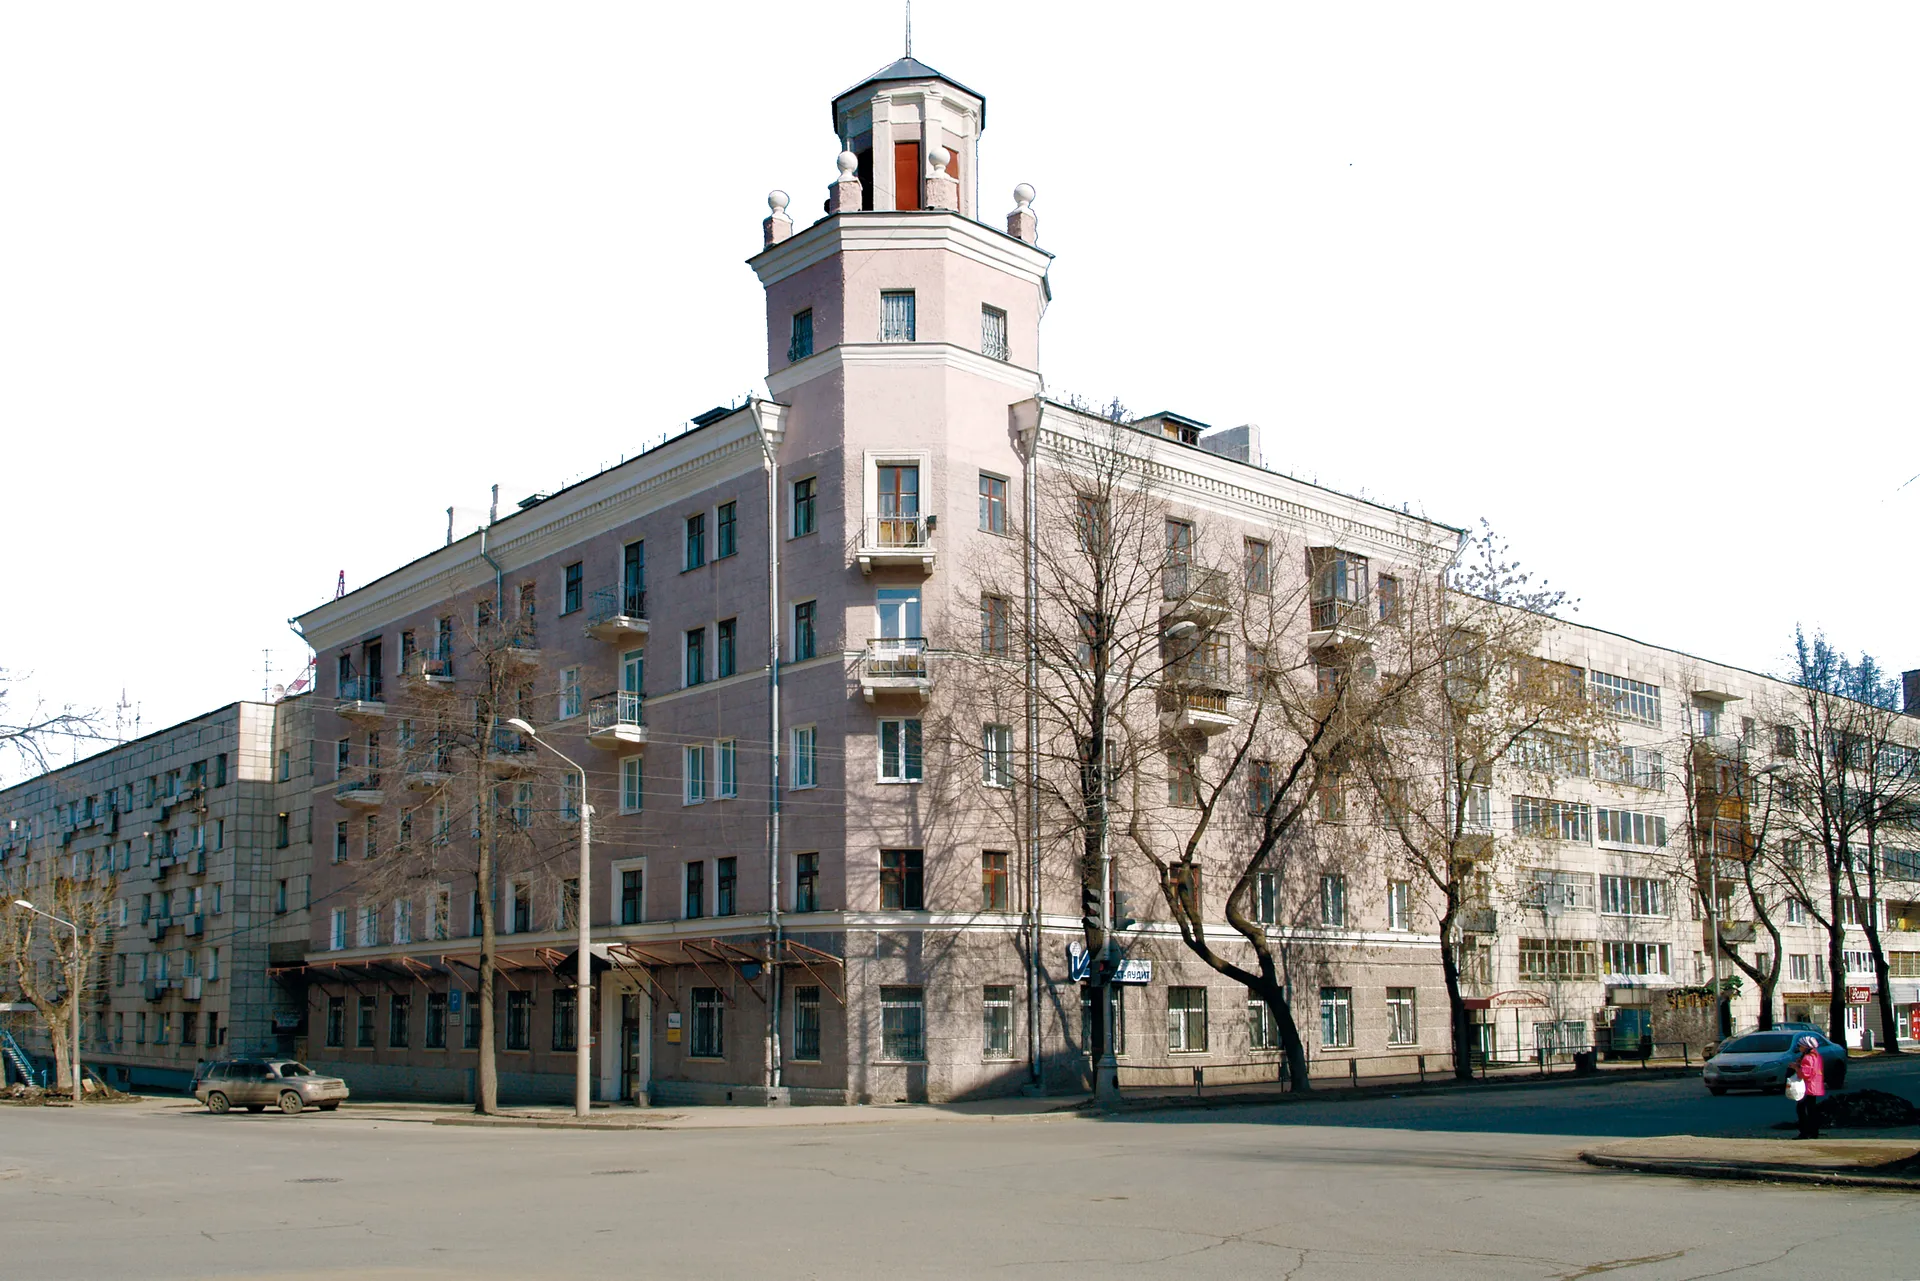 Здание на перекрестке улиц Екатерининская и 25 Октября / Soviet architecture at the Crossroads of Ekaterininskaya and 25 October streets